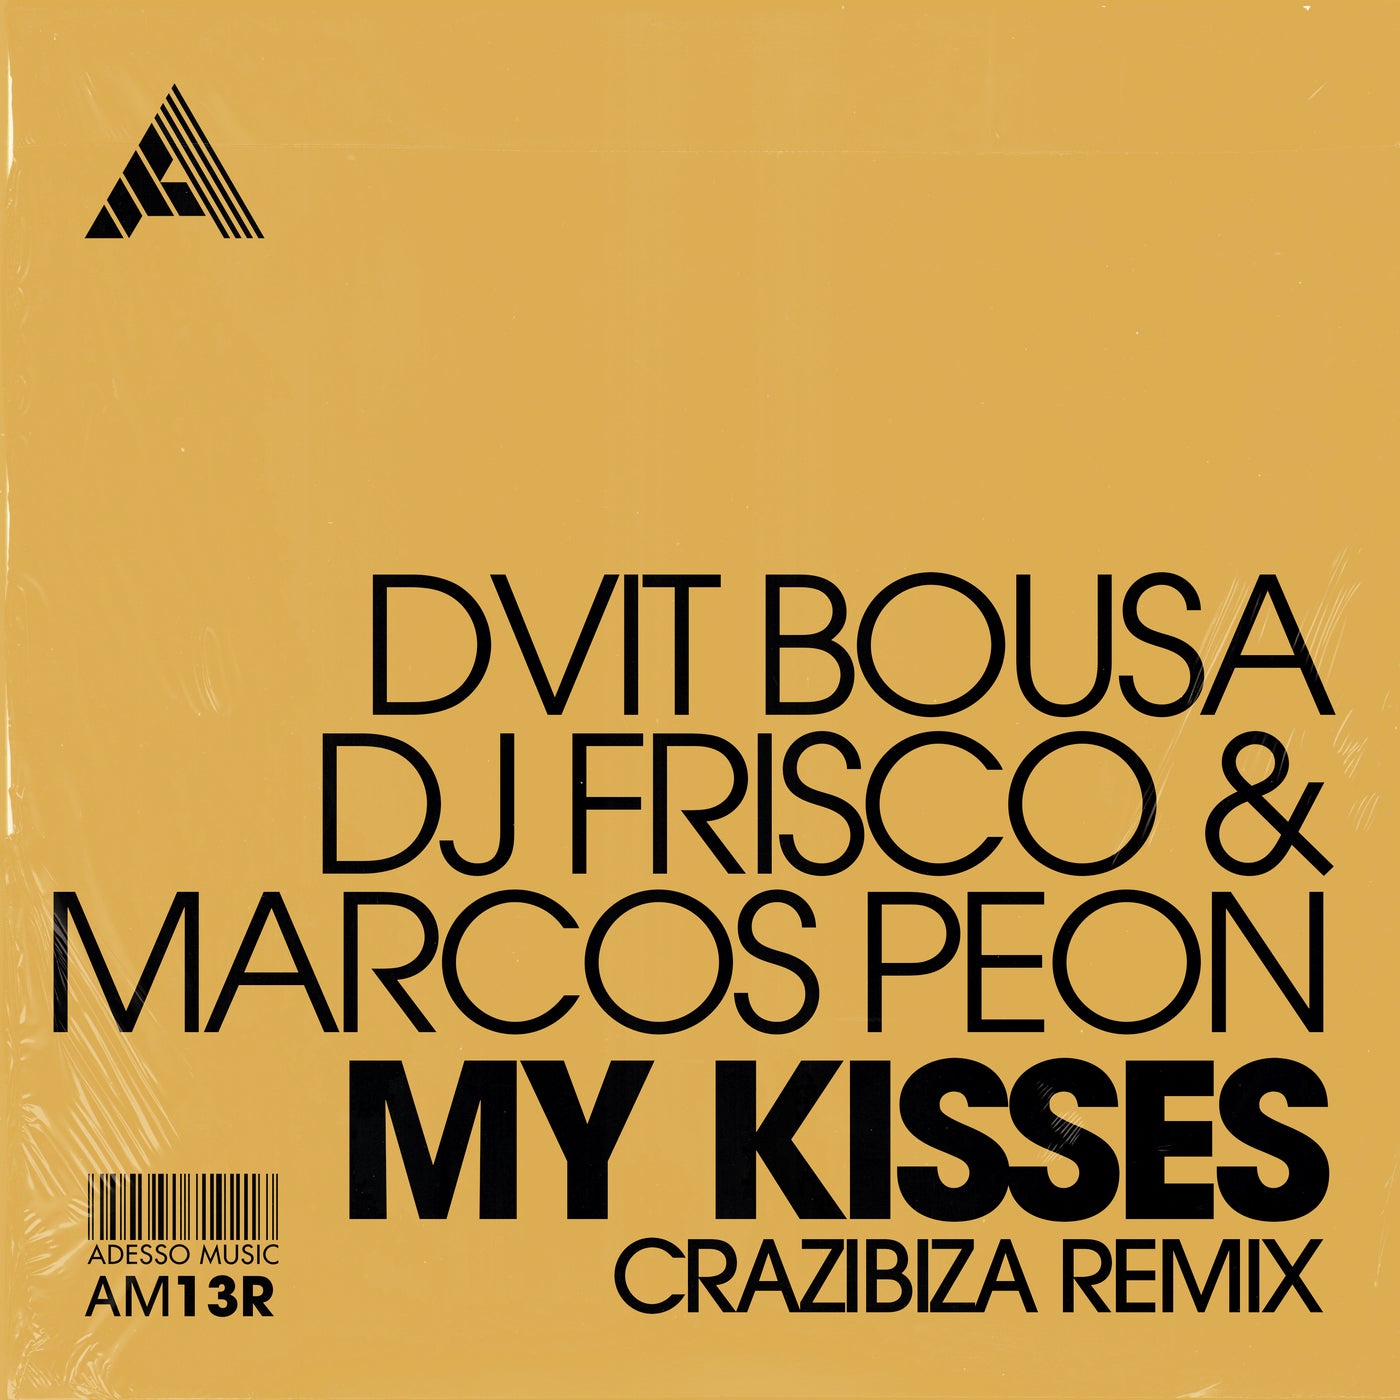 DJ Frisco x Dvit Bousa & Marcos Peon - My Kisses (Crazibiza Extended Remix)